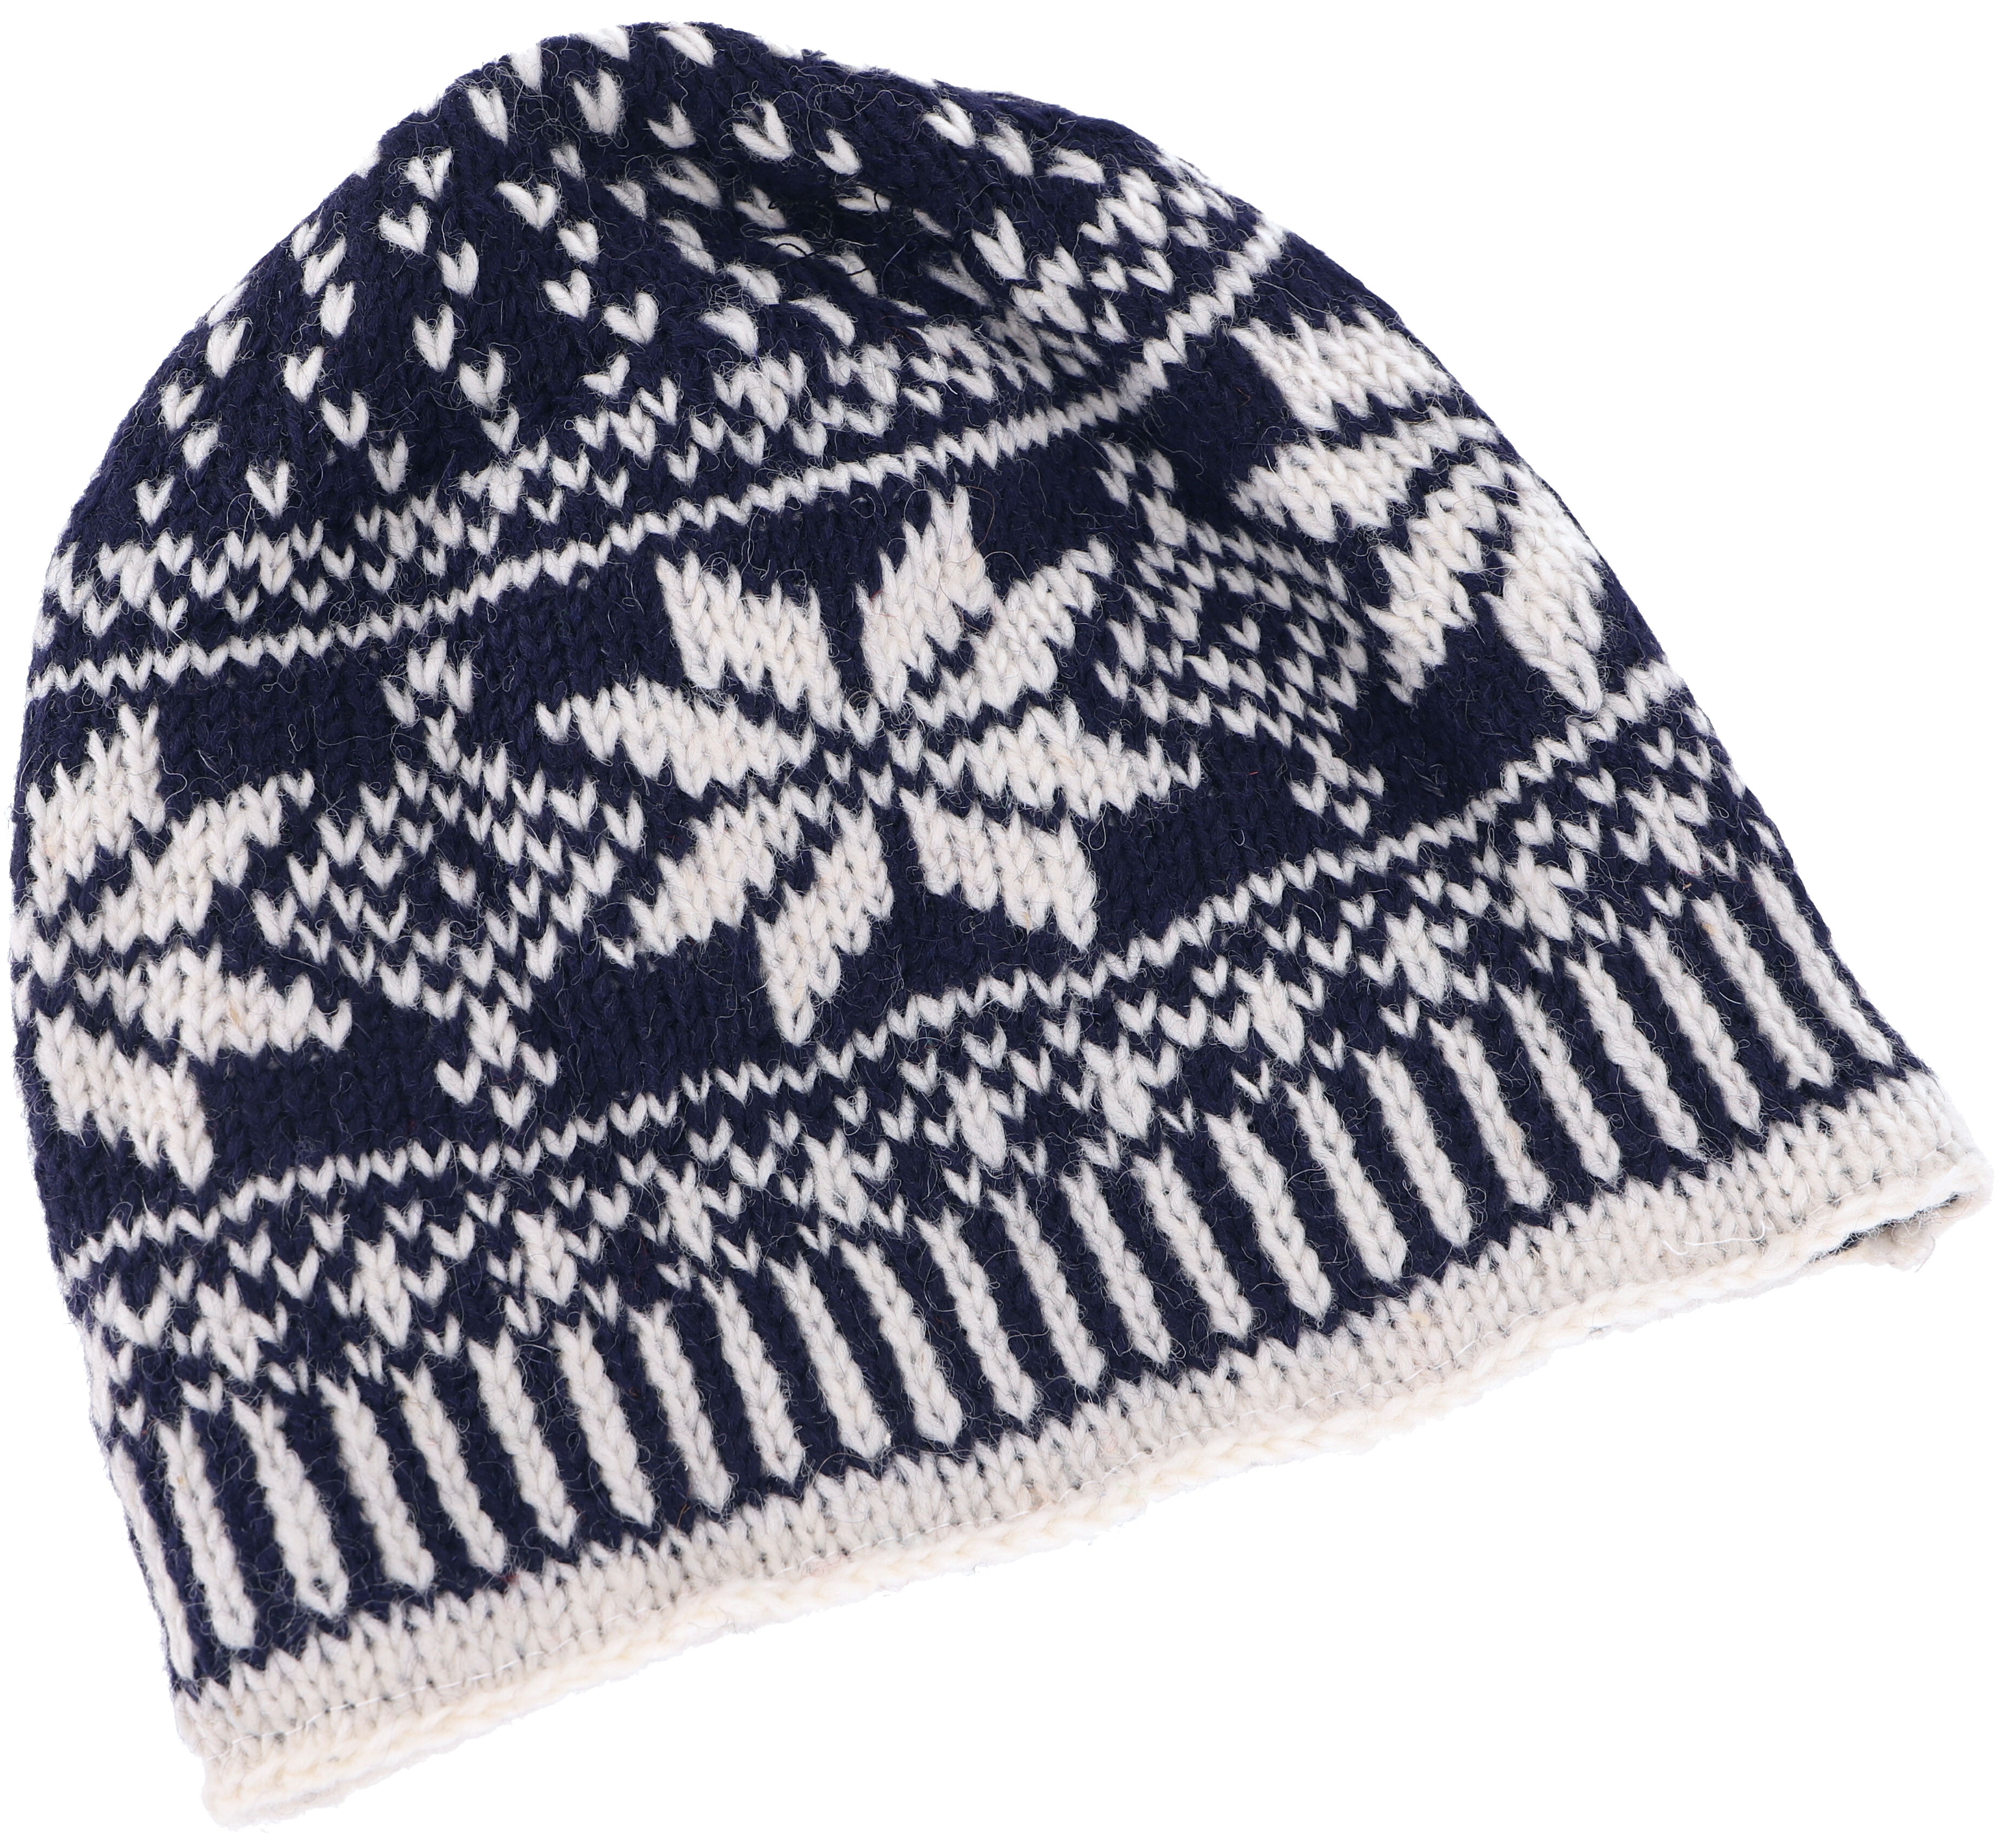 Mütze, Wollmütze dunkelblau/weiß aus handgestrickte mit Strickmütze, Wintermütze Norwegermuster - Nepal,